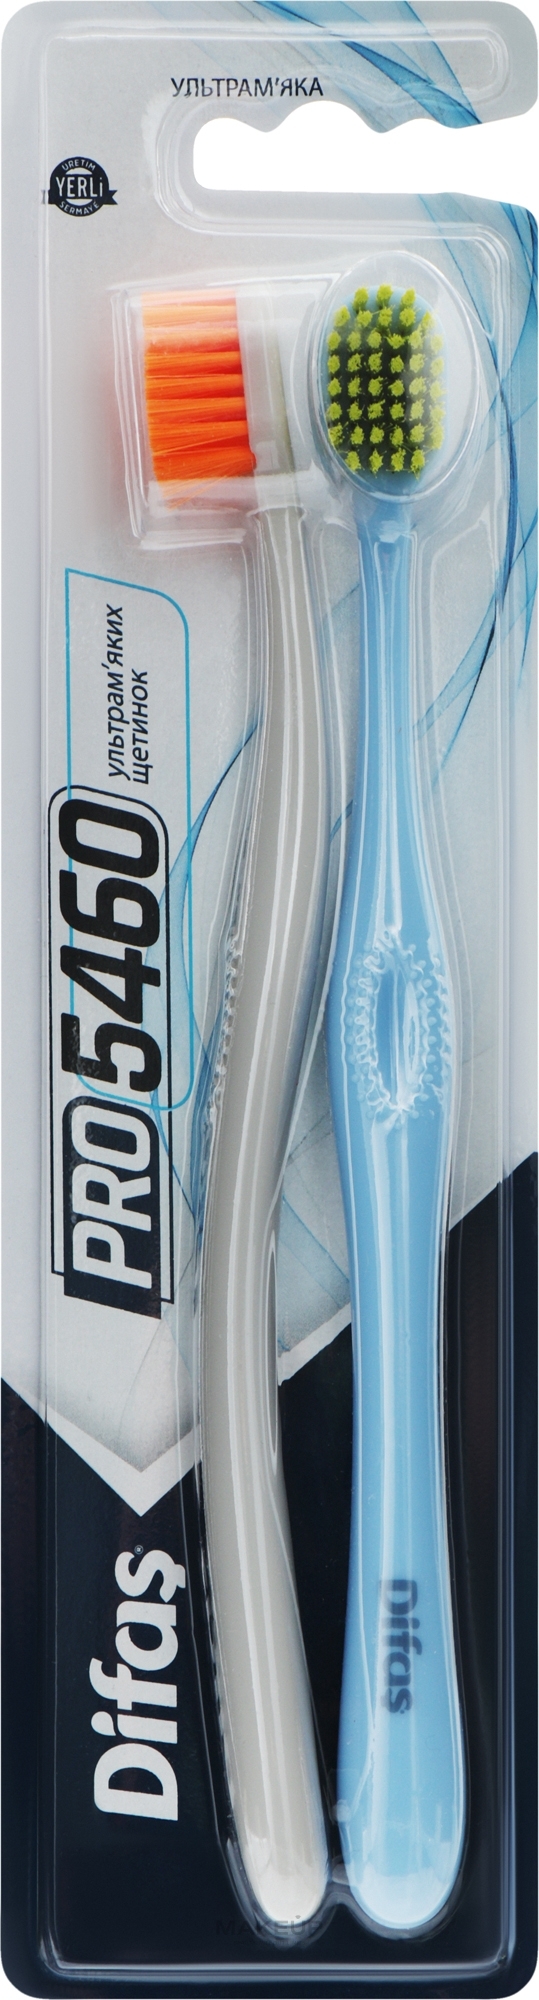 Набір зубних щіток "Ultra Soft", сіра + блакитна - Difas PRO 5460 — фото 2шт